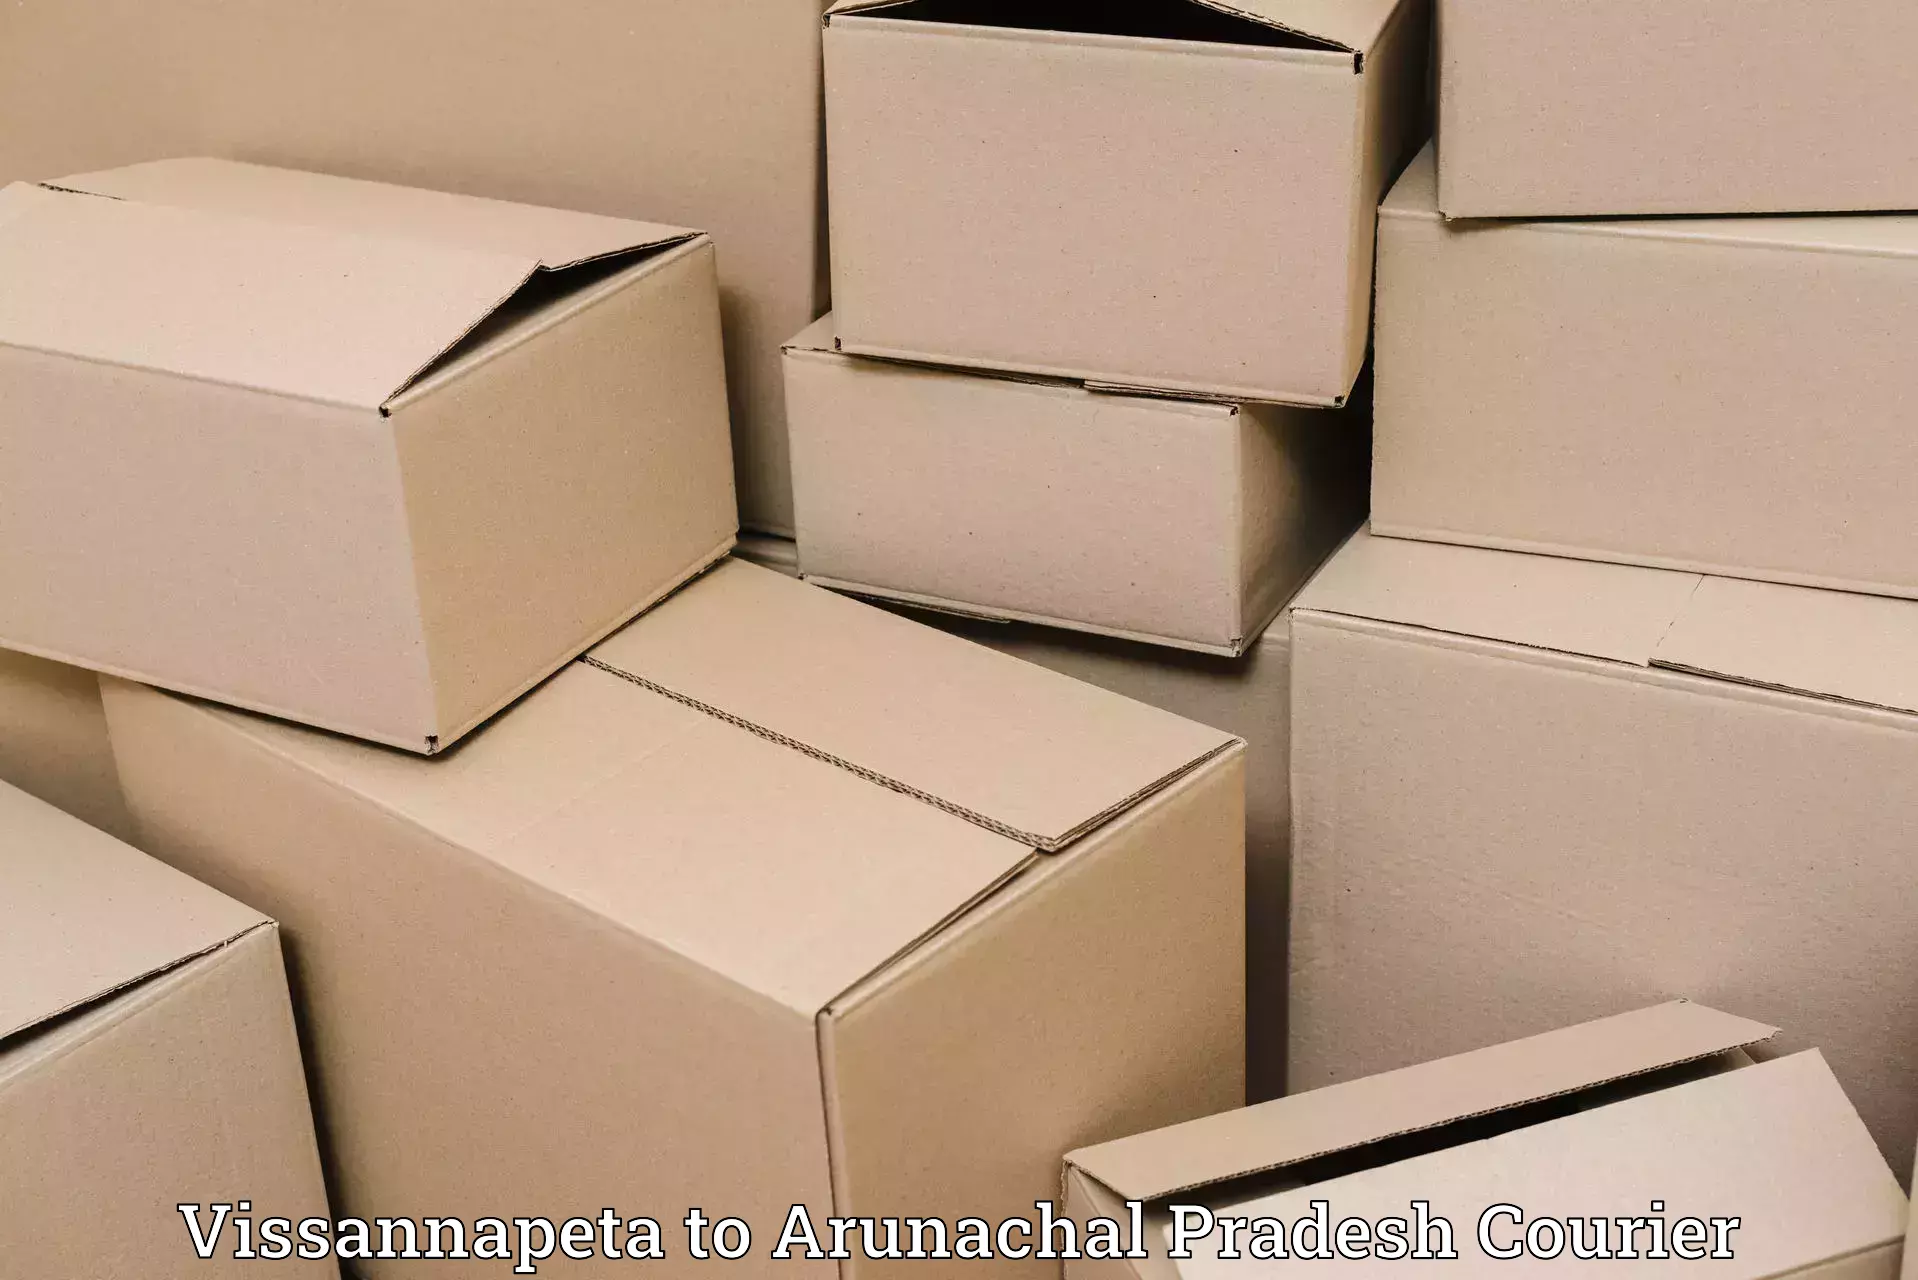 Baggage delivery scheduling Vissannapeta to Arunachal Pradesh